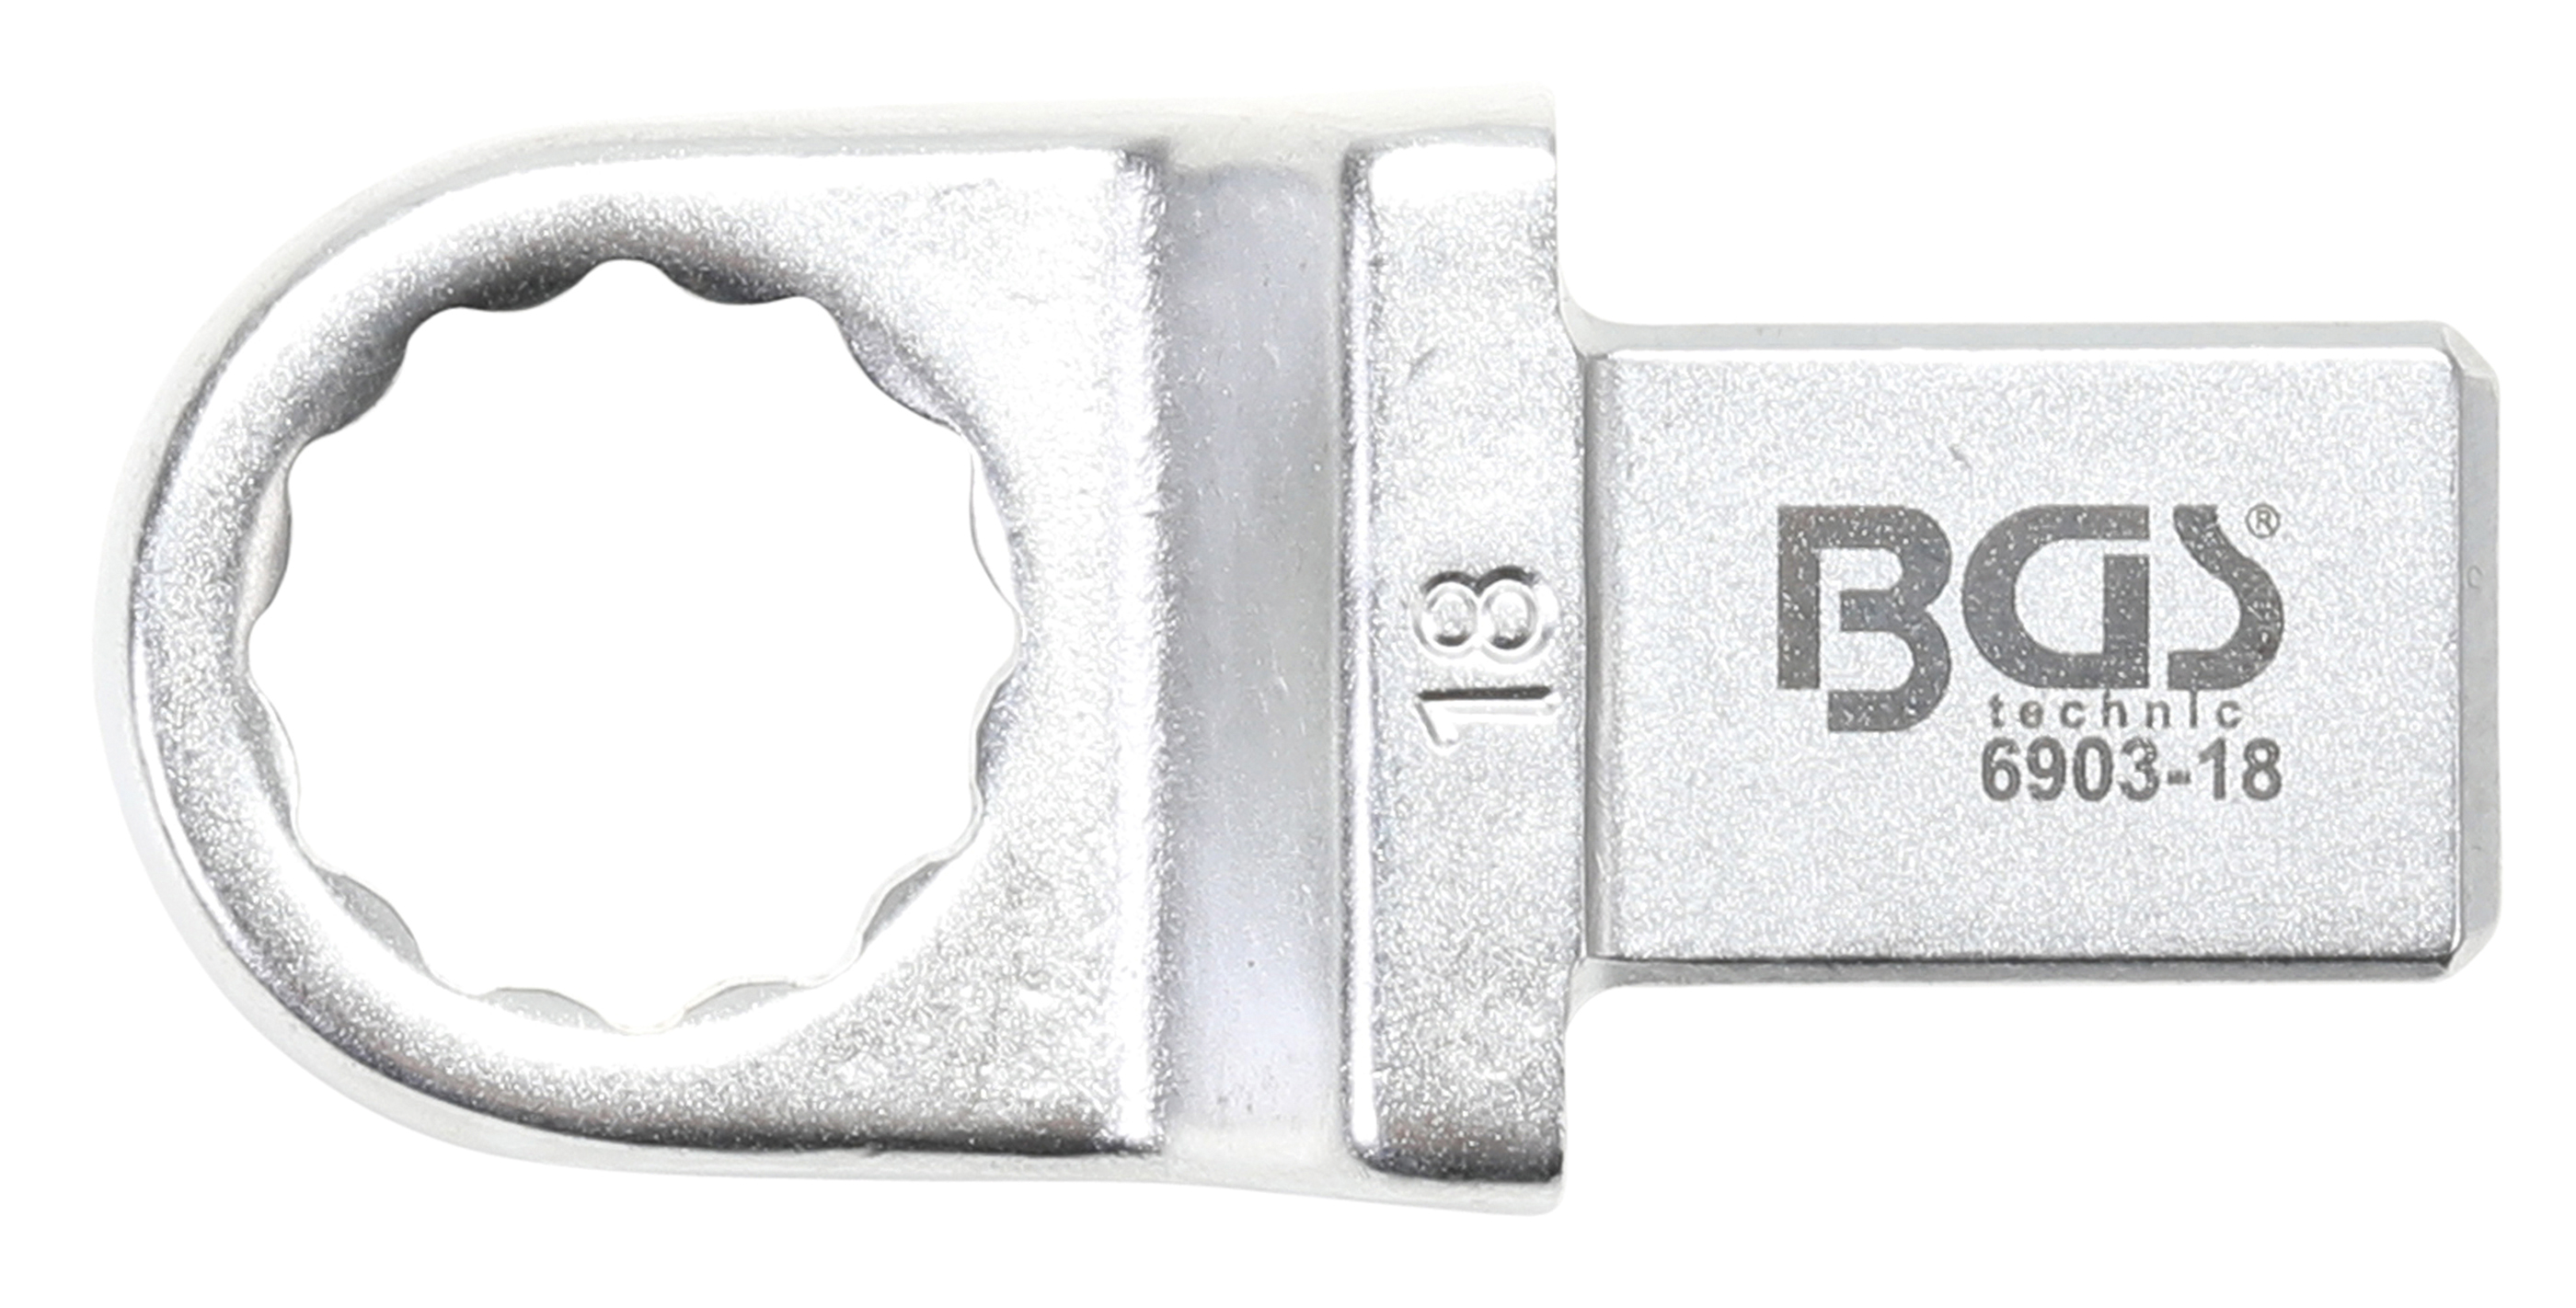 BGS Einsteck-Ringschlüssel | 18 mm | Aufnahme 14 x 18 mm